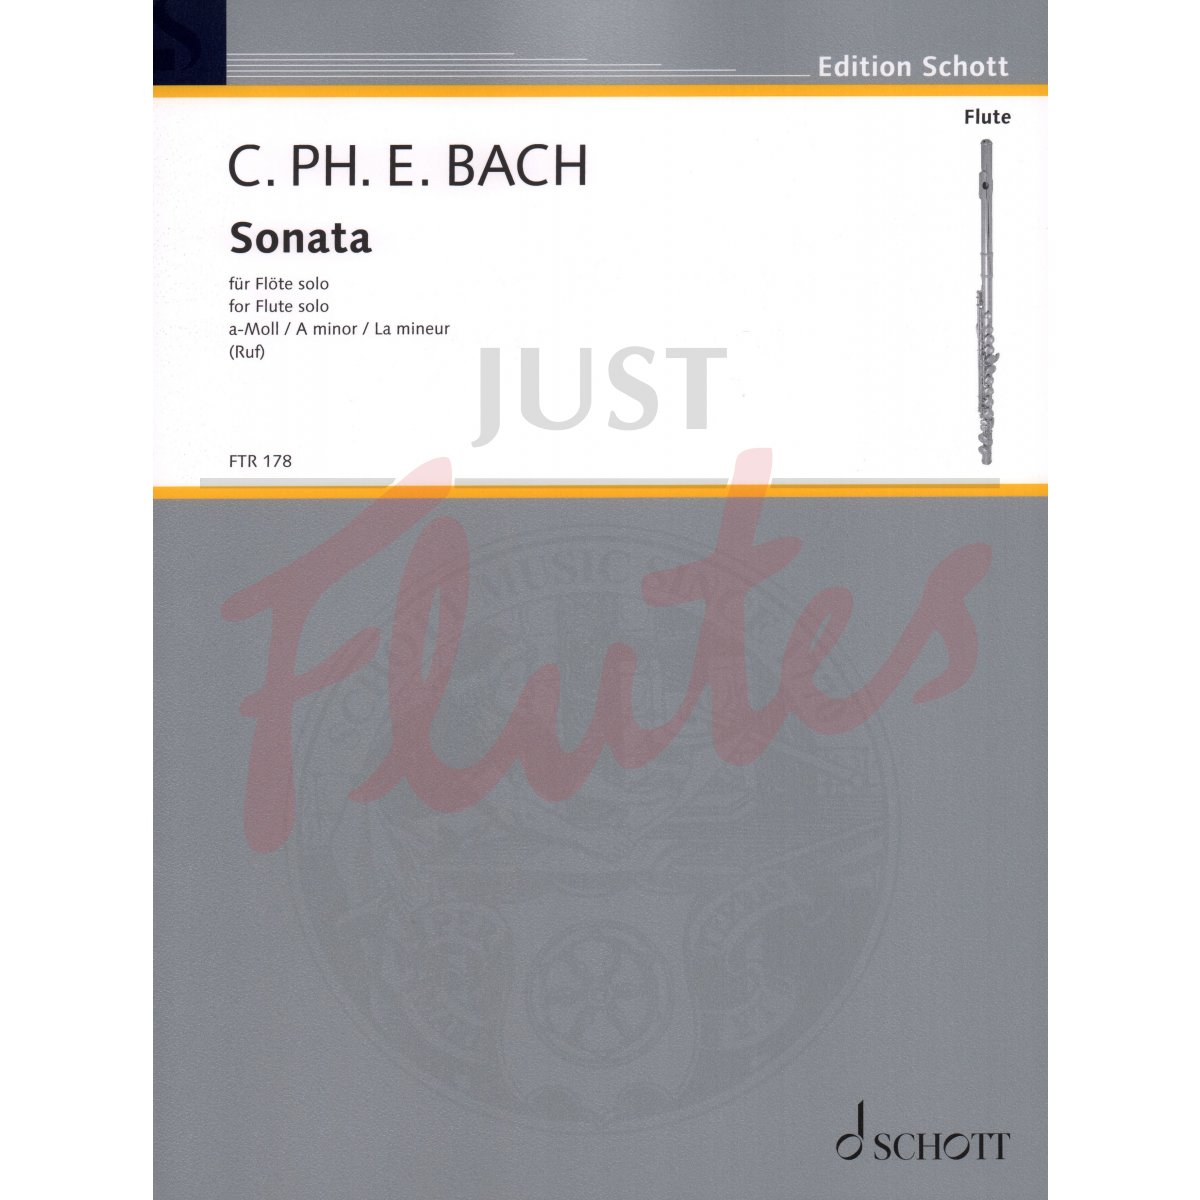 Sonata in A minor for Solo Flute